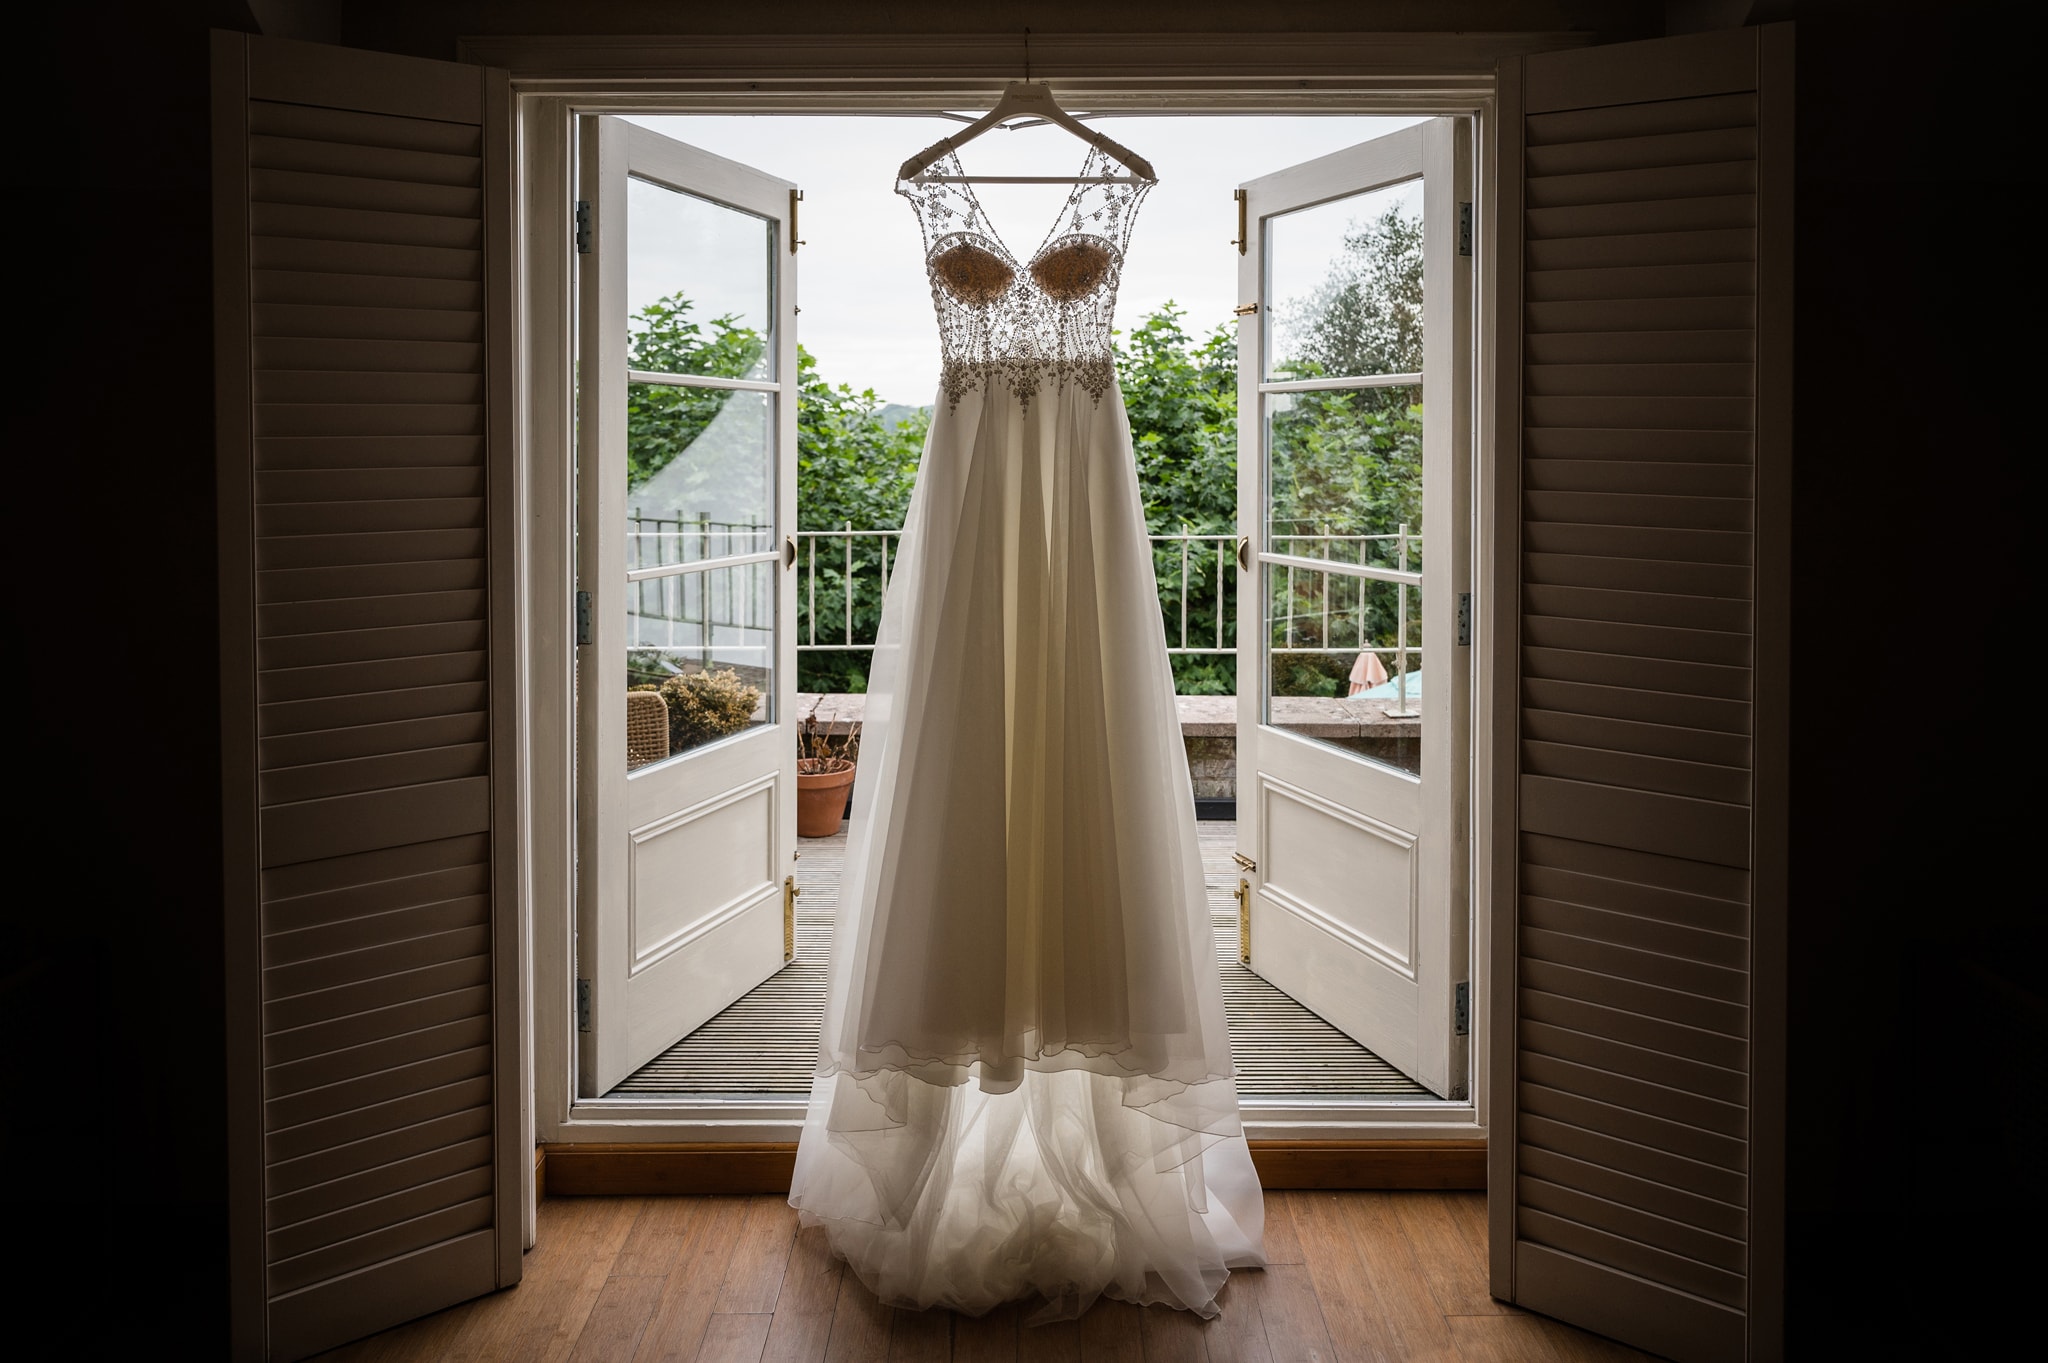 Wedding dress hanging on balcony window